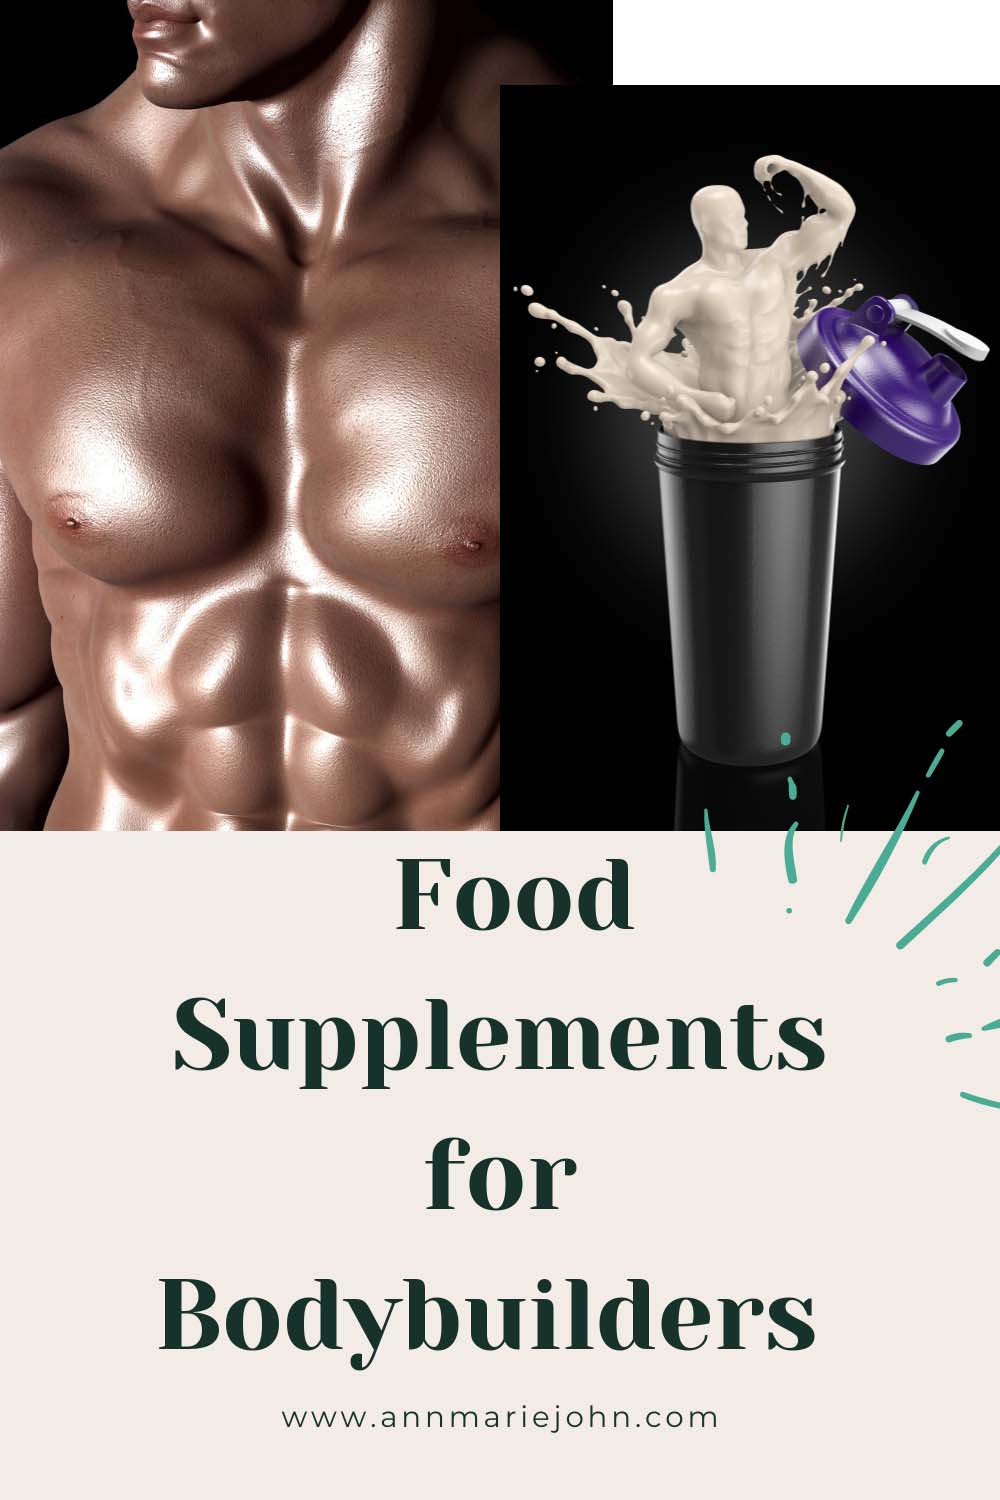 Food Supplements for Bodybuilders 